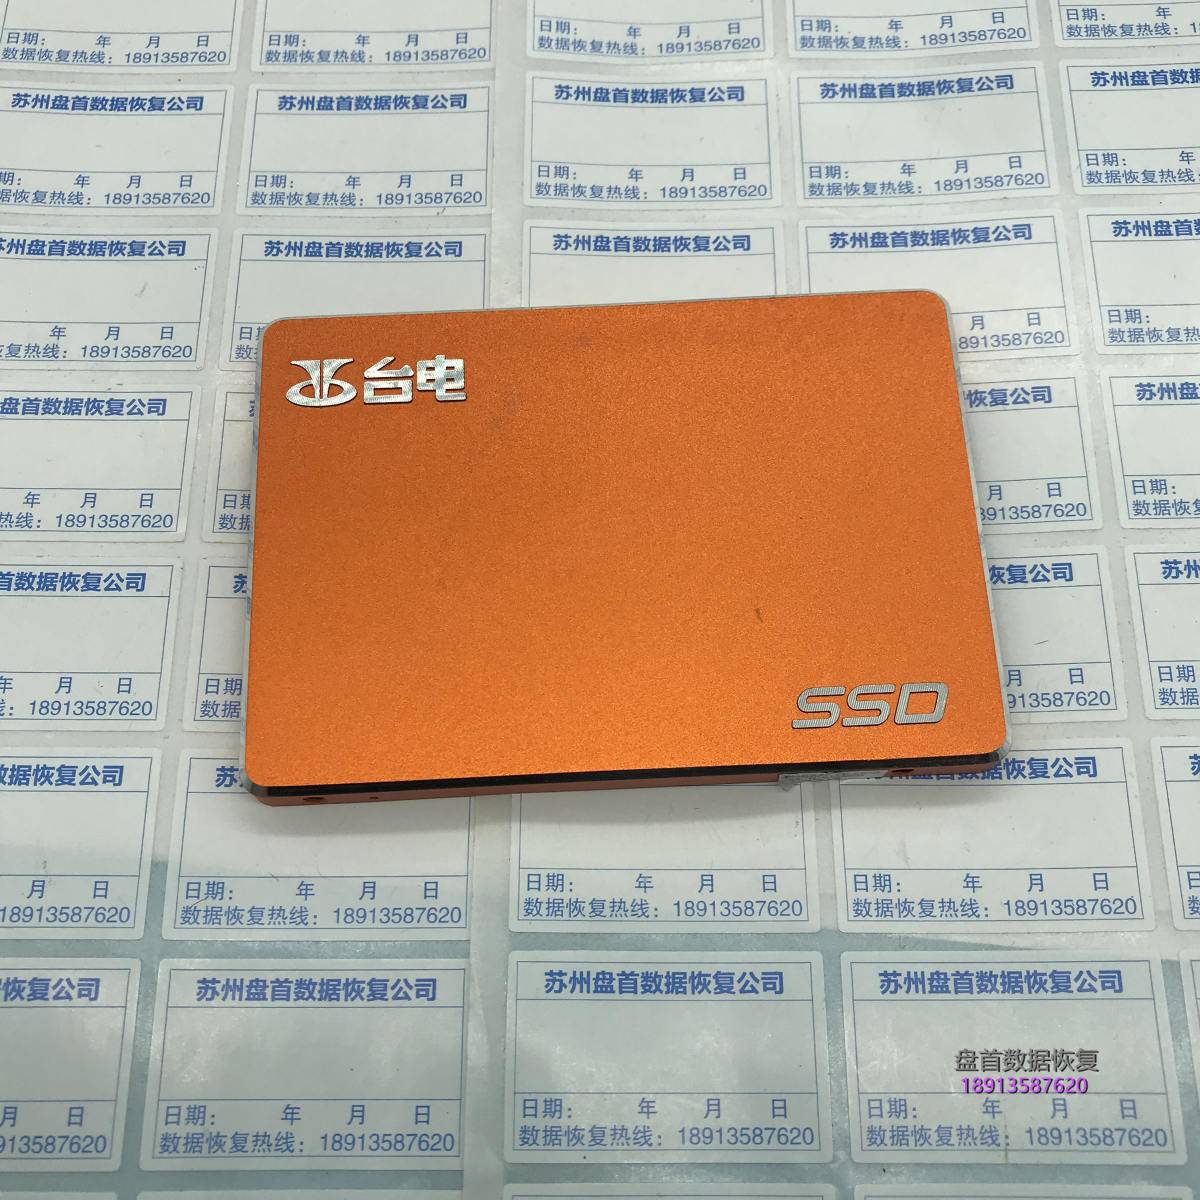 台电SD120GBS500掉盘SSD无法识别SM2258XT主控SSD不读盘数据恢复成功